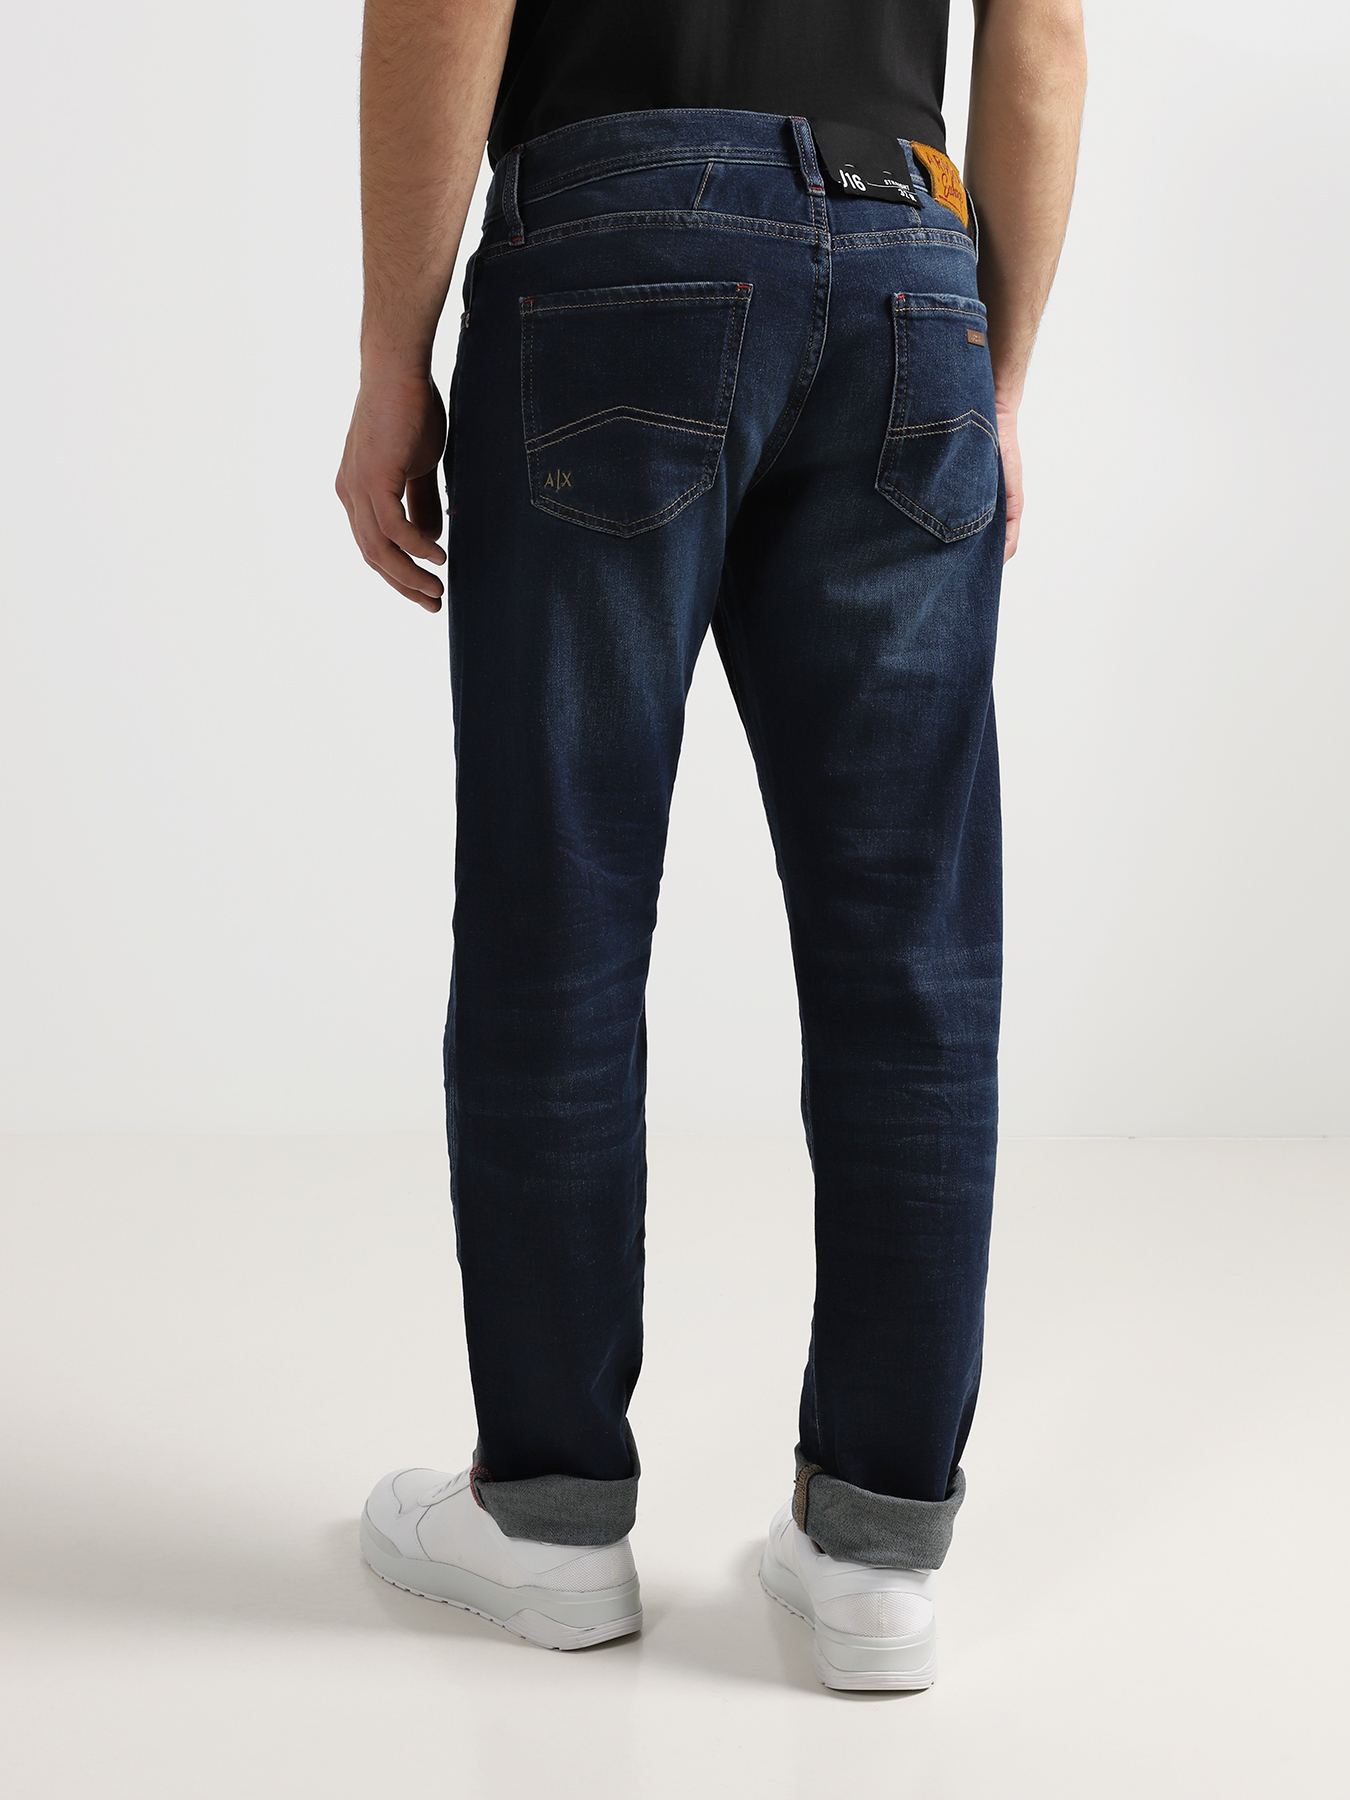 Armani Exchange Мужские рваные джинсы J16 353146-016 Фото 2